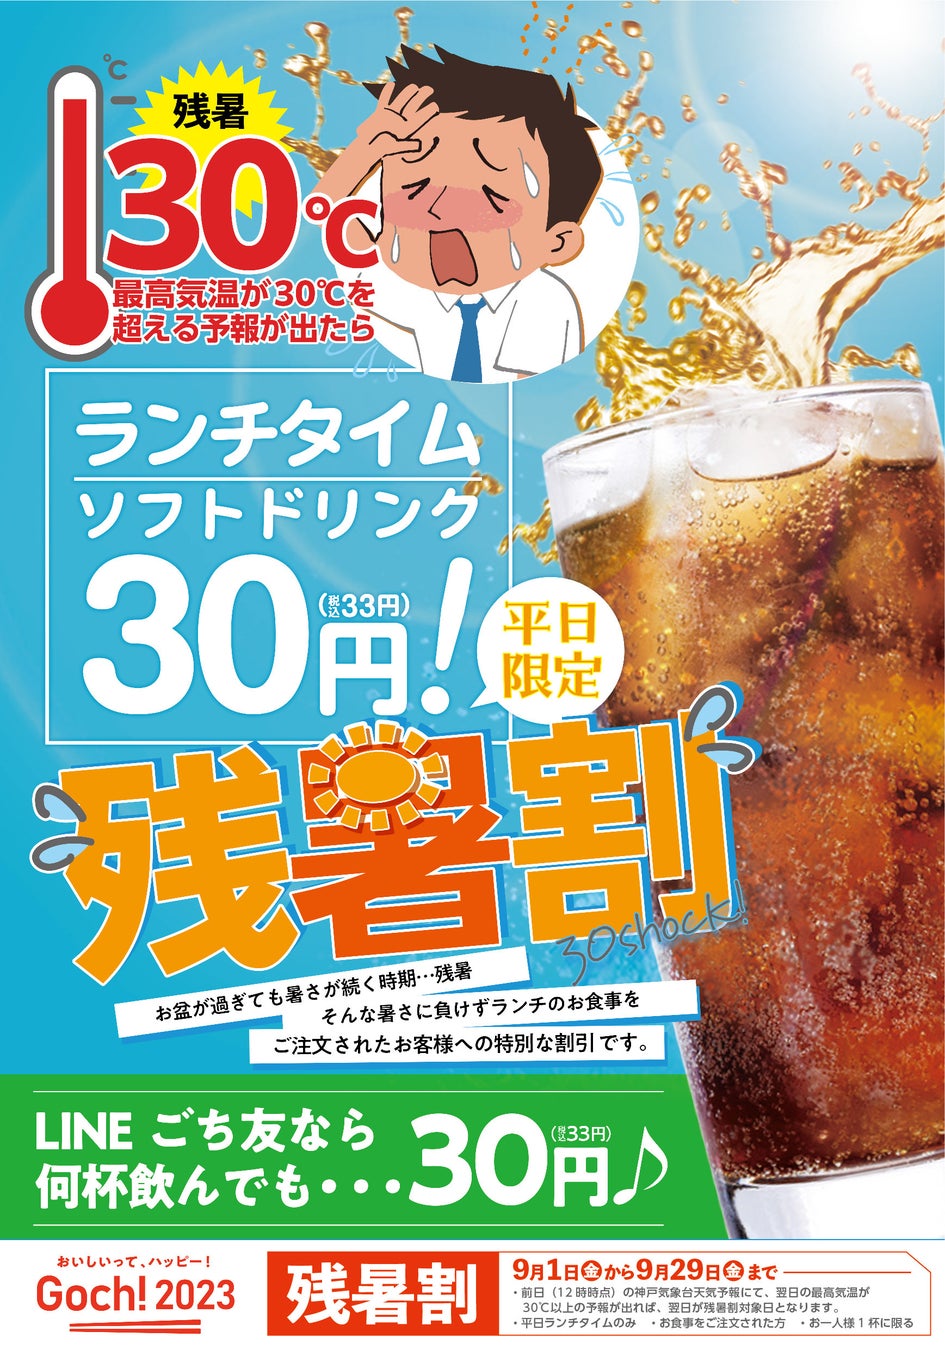 兵庫・大阪の和食レストラン「ごちそう村」で、9月1日より“残暑割”始めます！ 予想最高気温が30度超えた日は、残暑でドリンクサービス「ランチドリンク1杯=30円」で提供